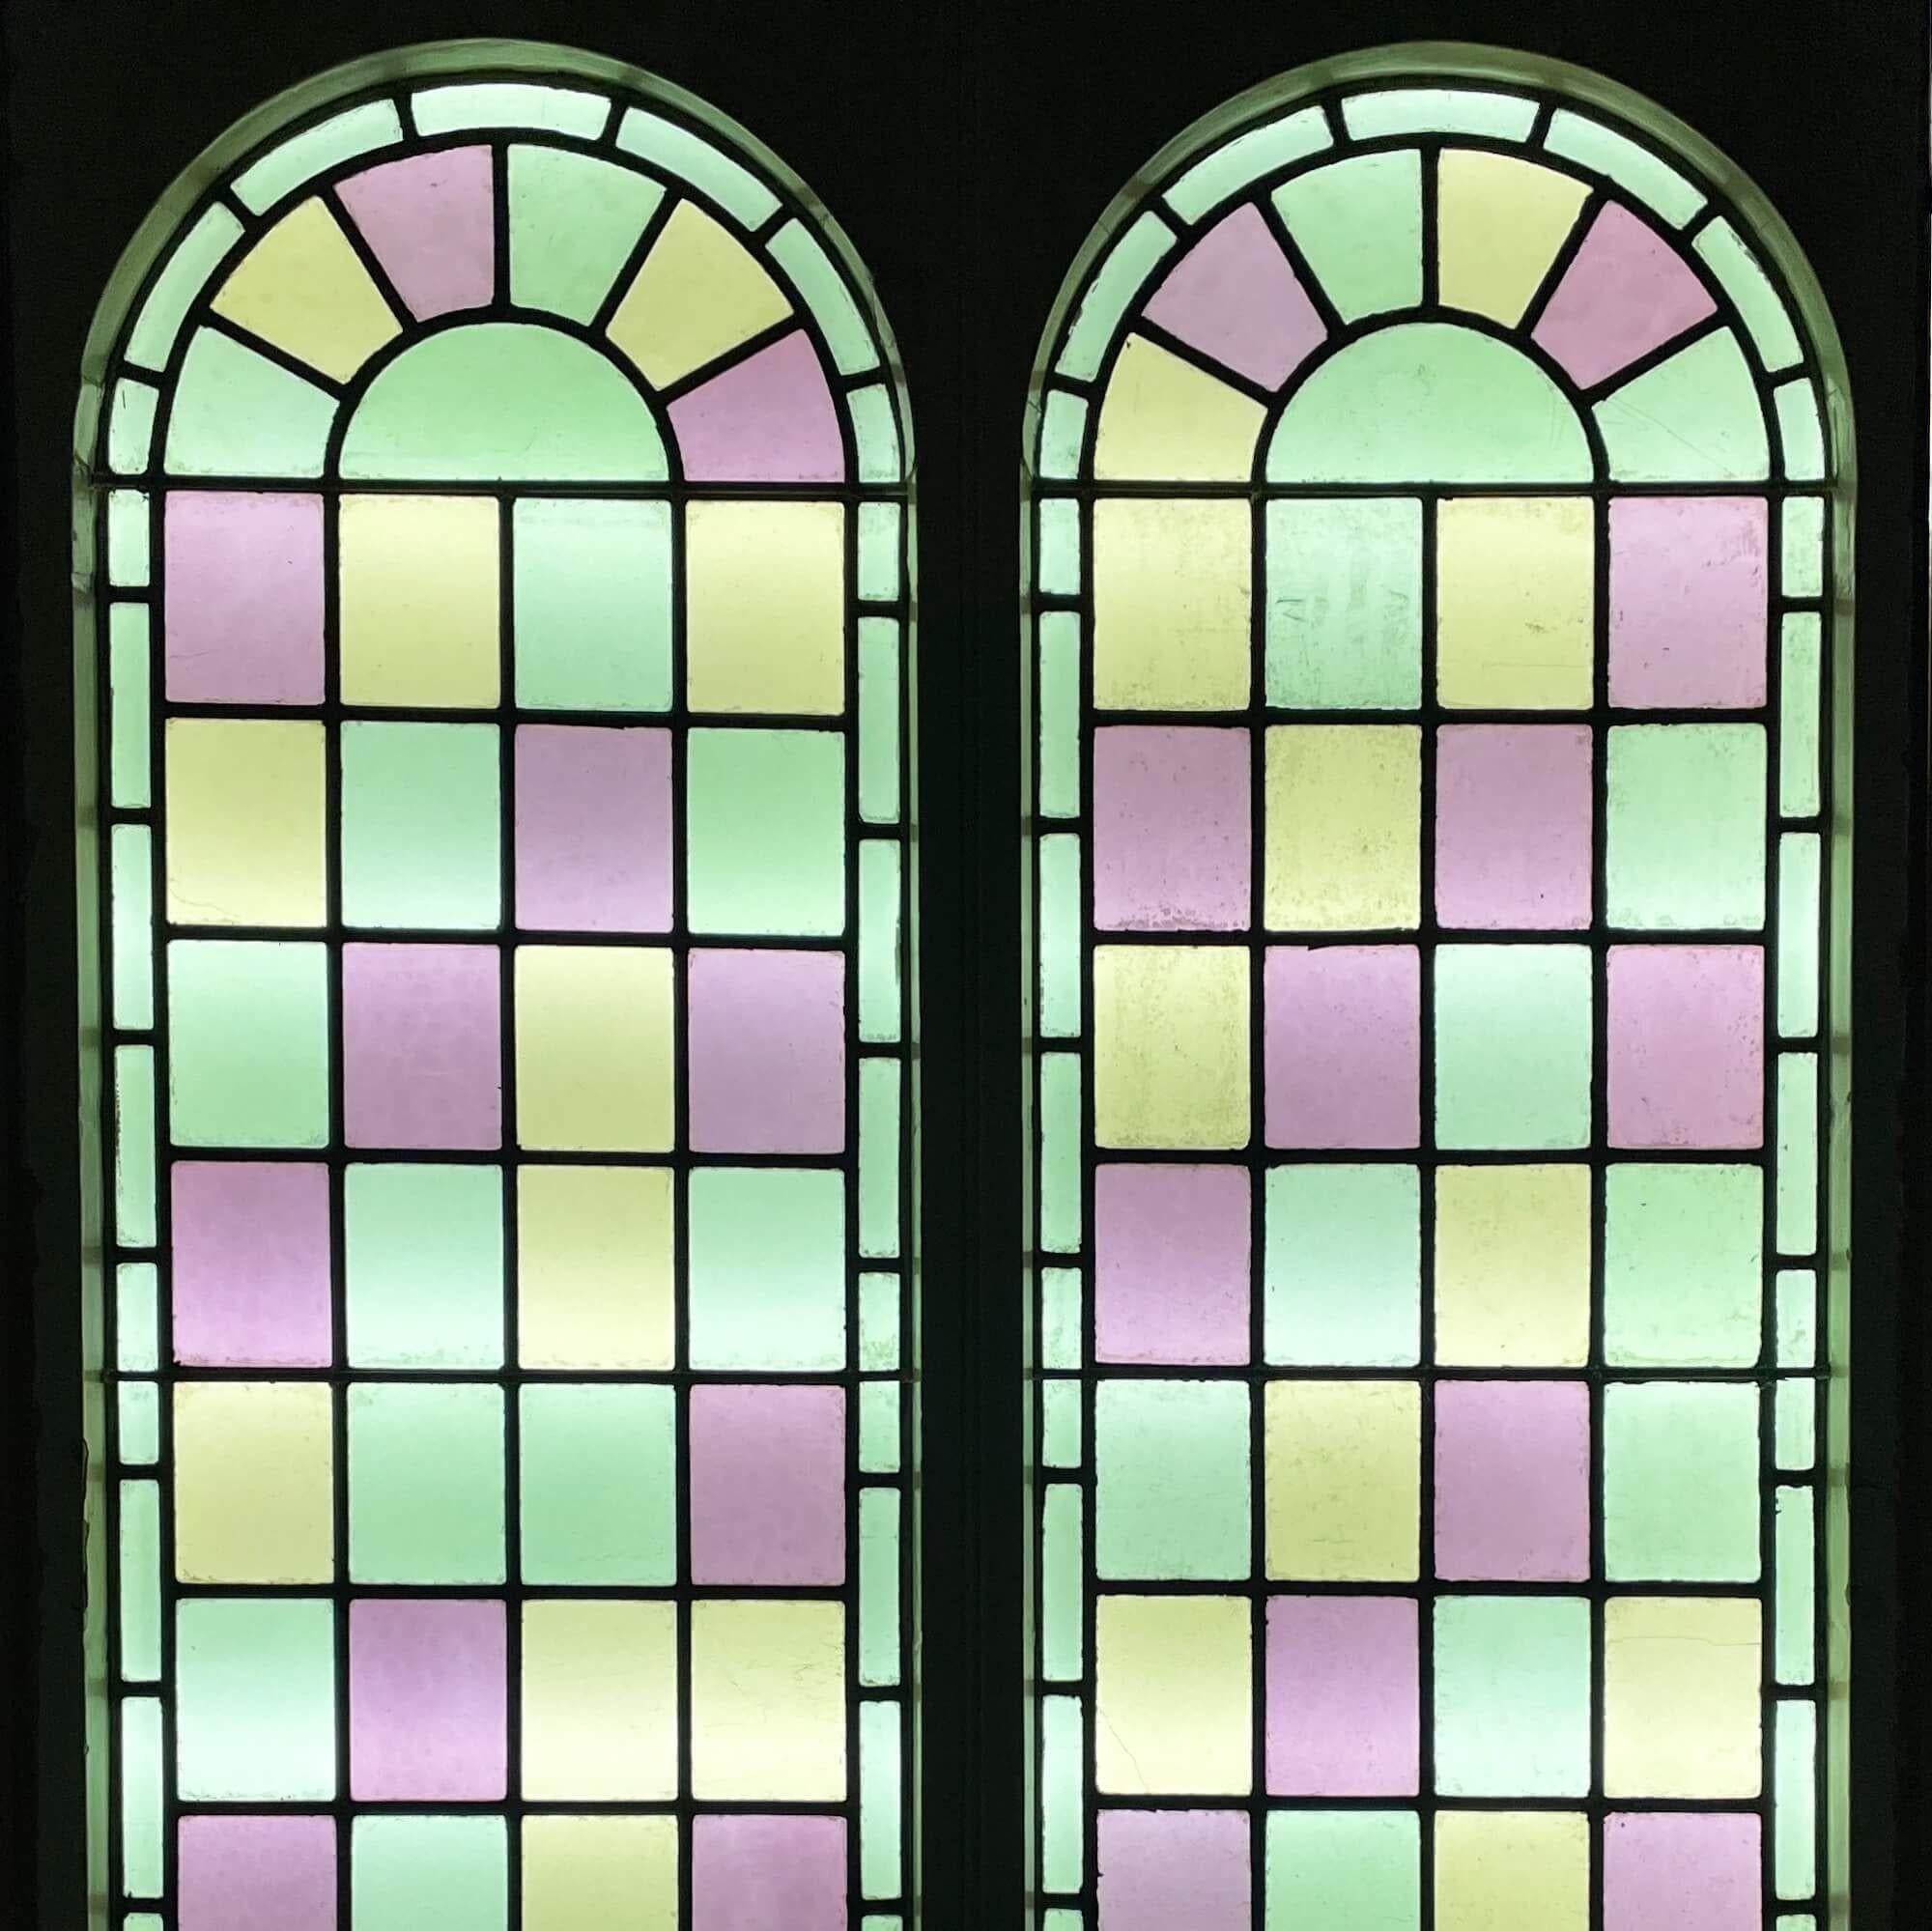 Ein Paar antiker, großer, wiederhergestellter, gewölbter Glasfenster, die aus einer 1850 erbauten Kapelle stammten. Diese großformatigen, farbenfrohen Fenster sind derzeit in den ursprünglichen Kiefernholzrahmen eingebaut.

Die um 1880 entstandenen